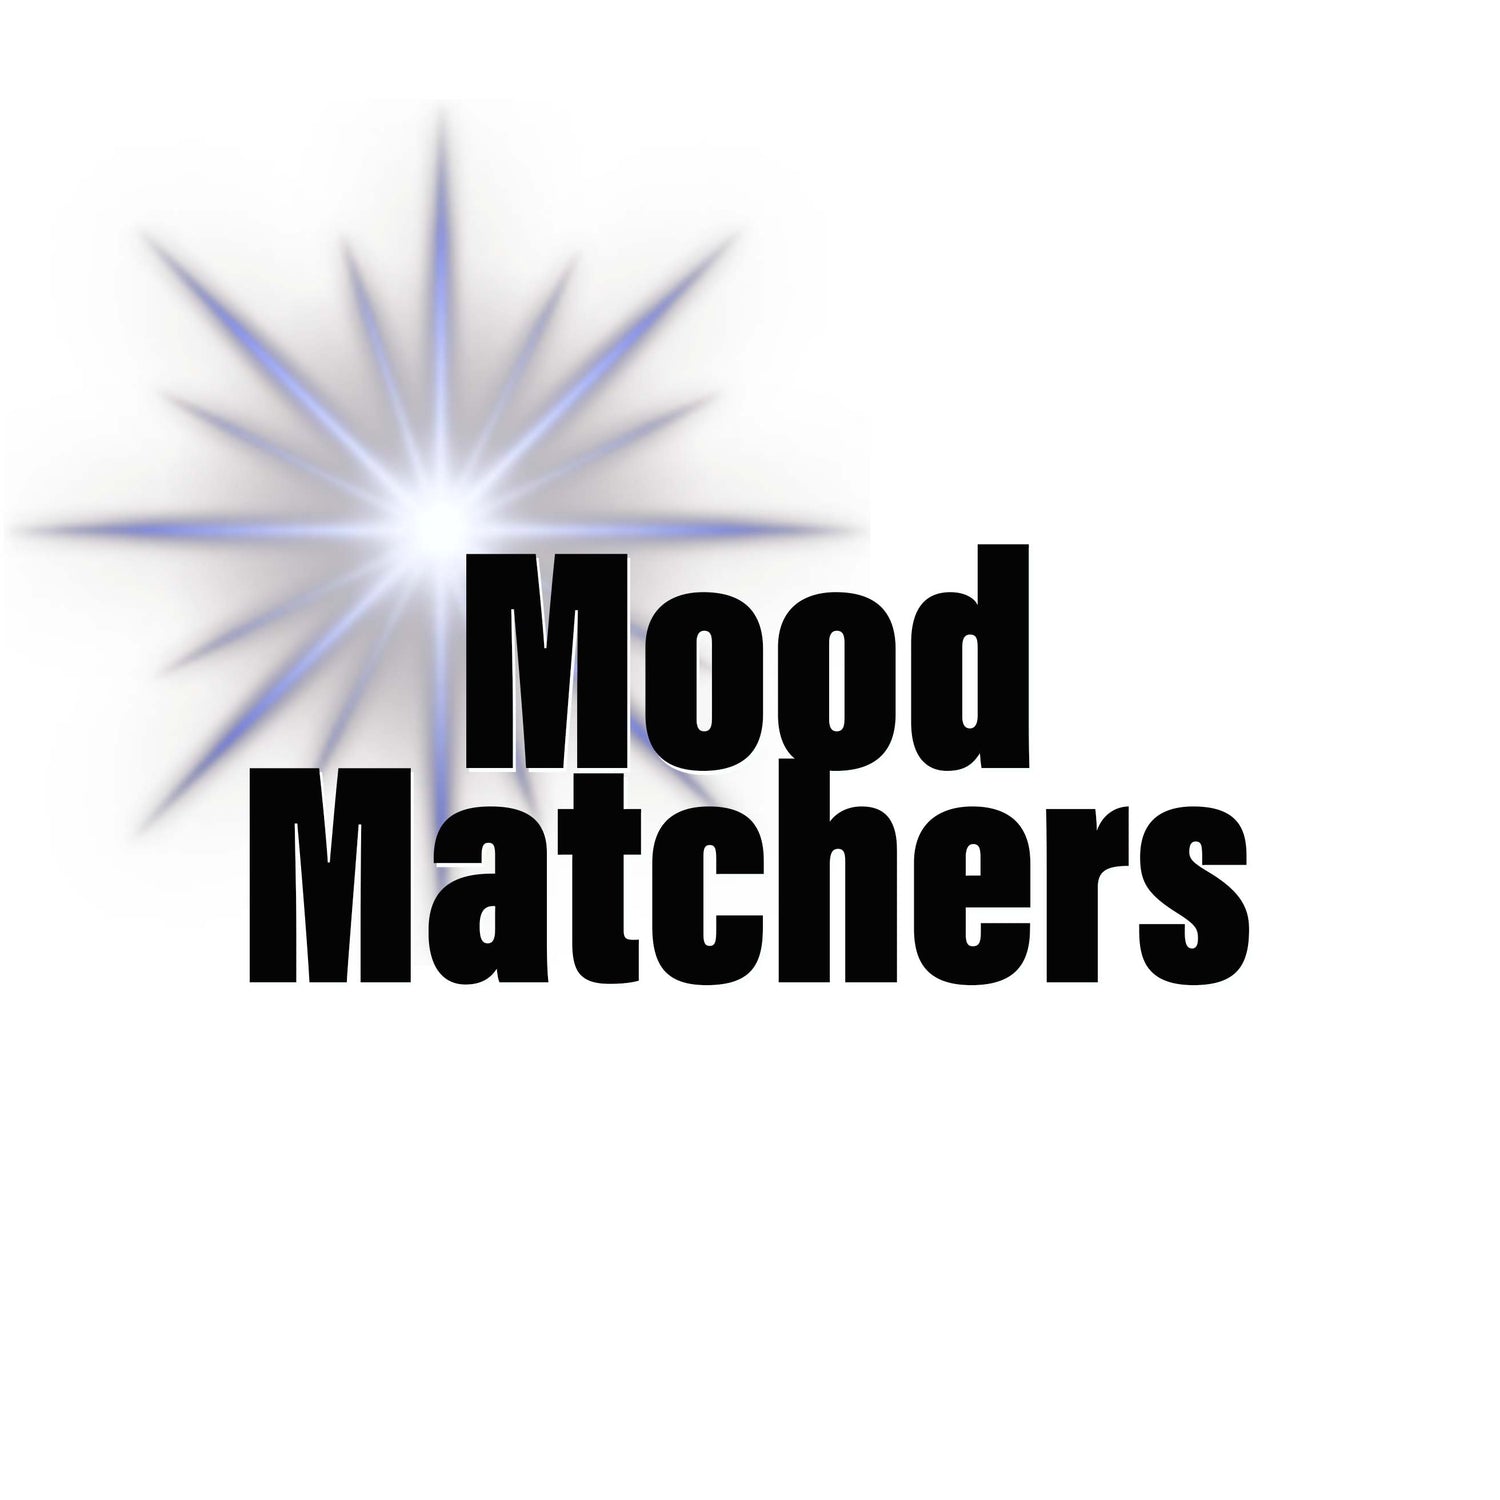 All Mood Matchers